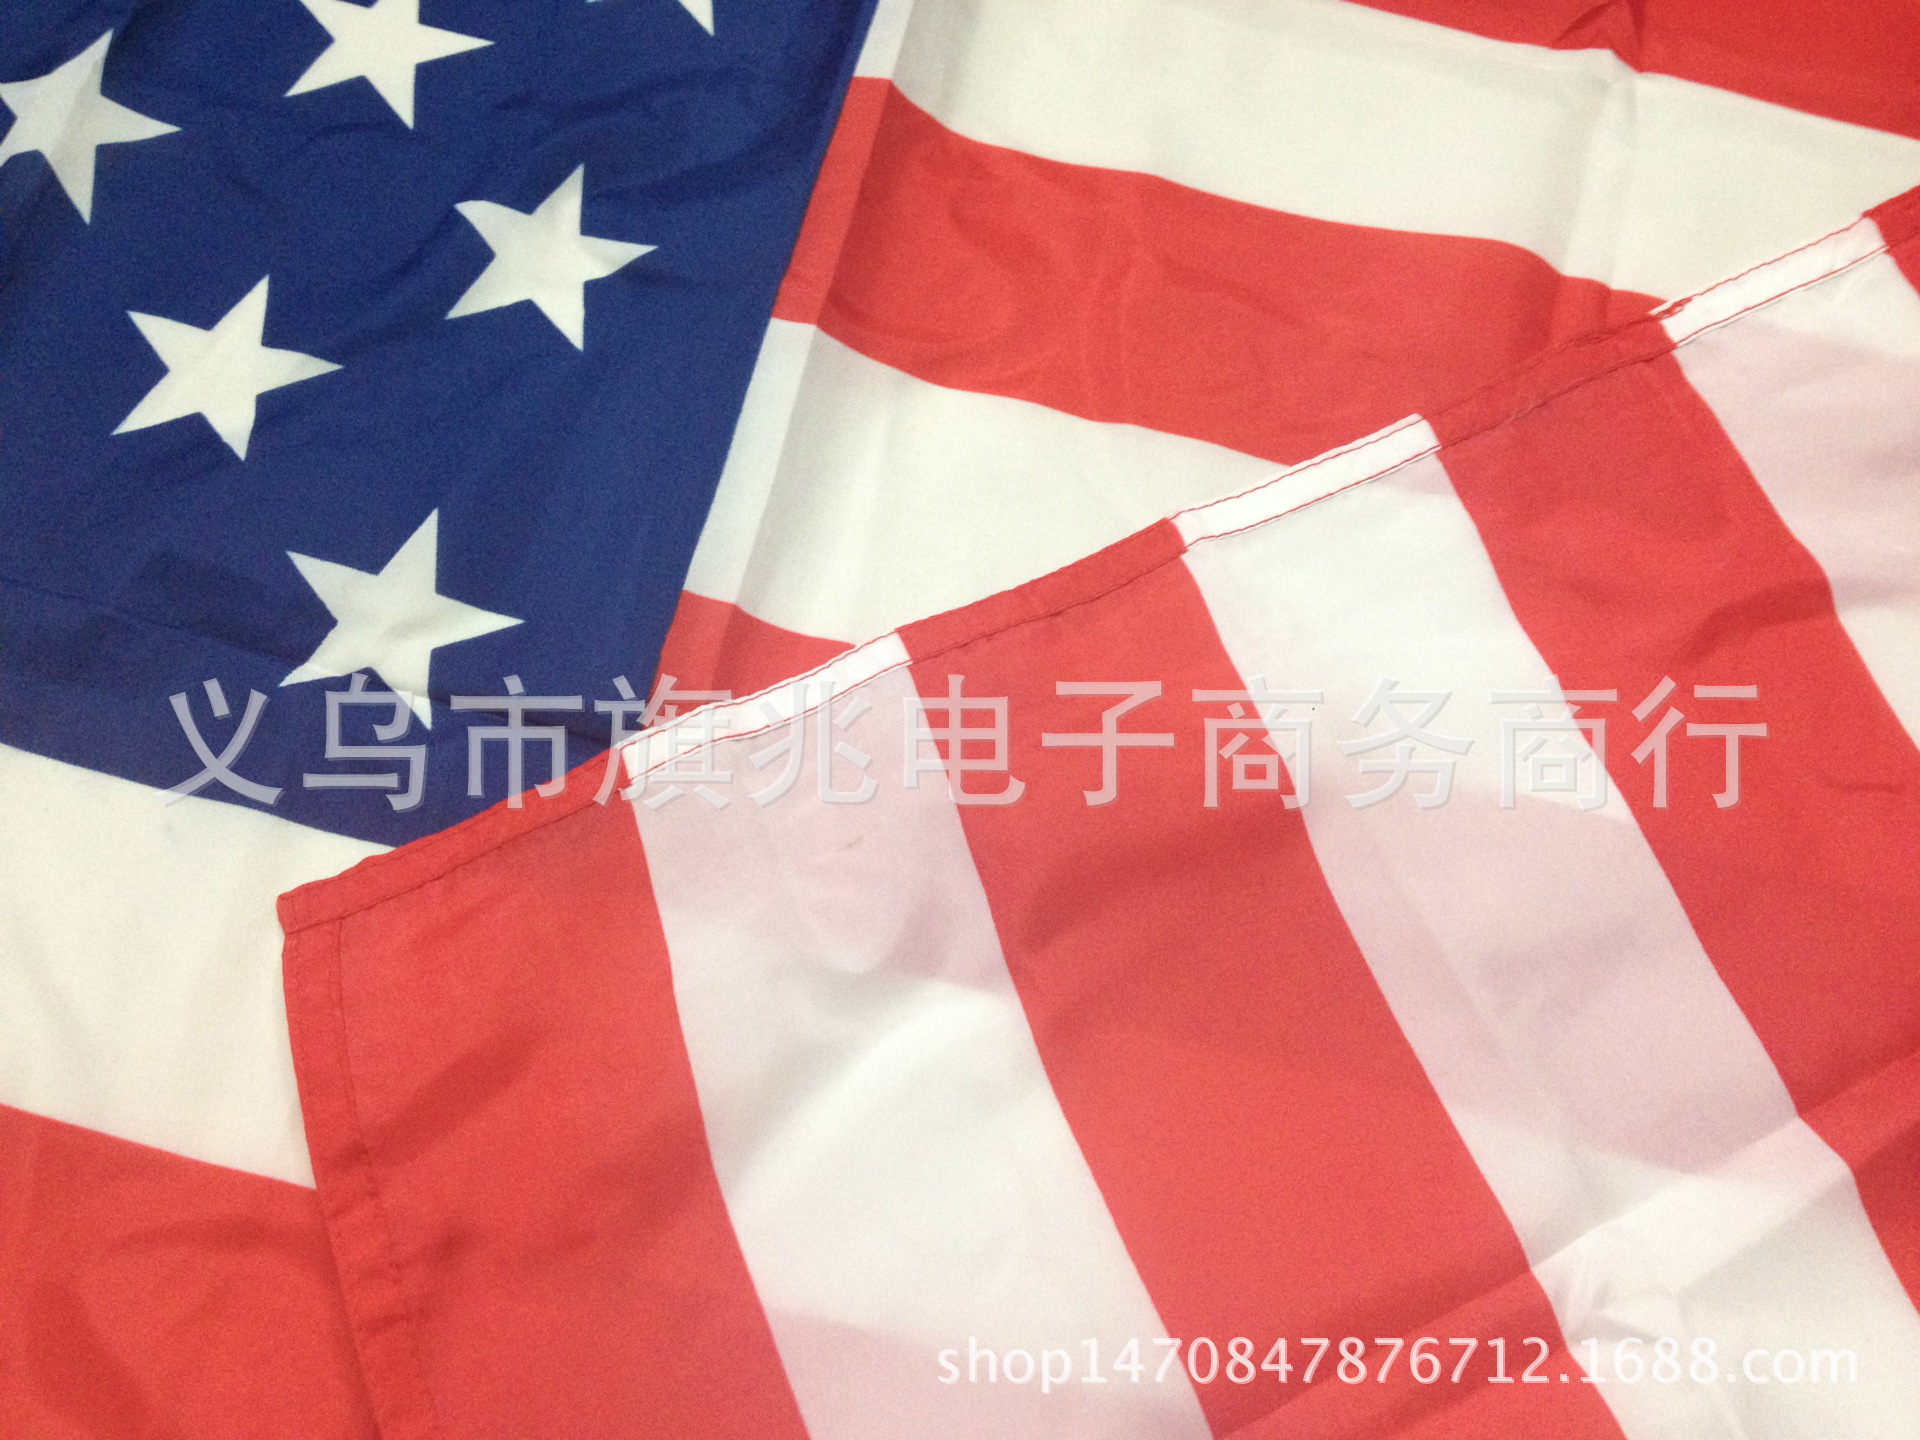 美国国旗 美国星条旗 生产与销售 厂家直销细节图